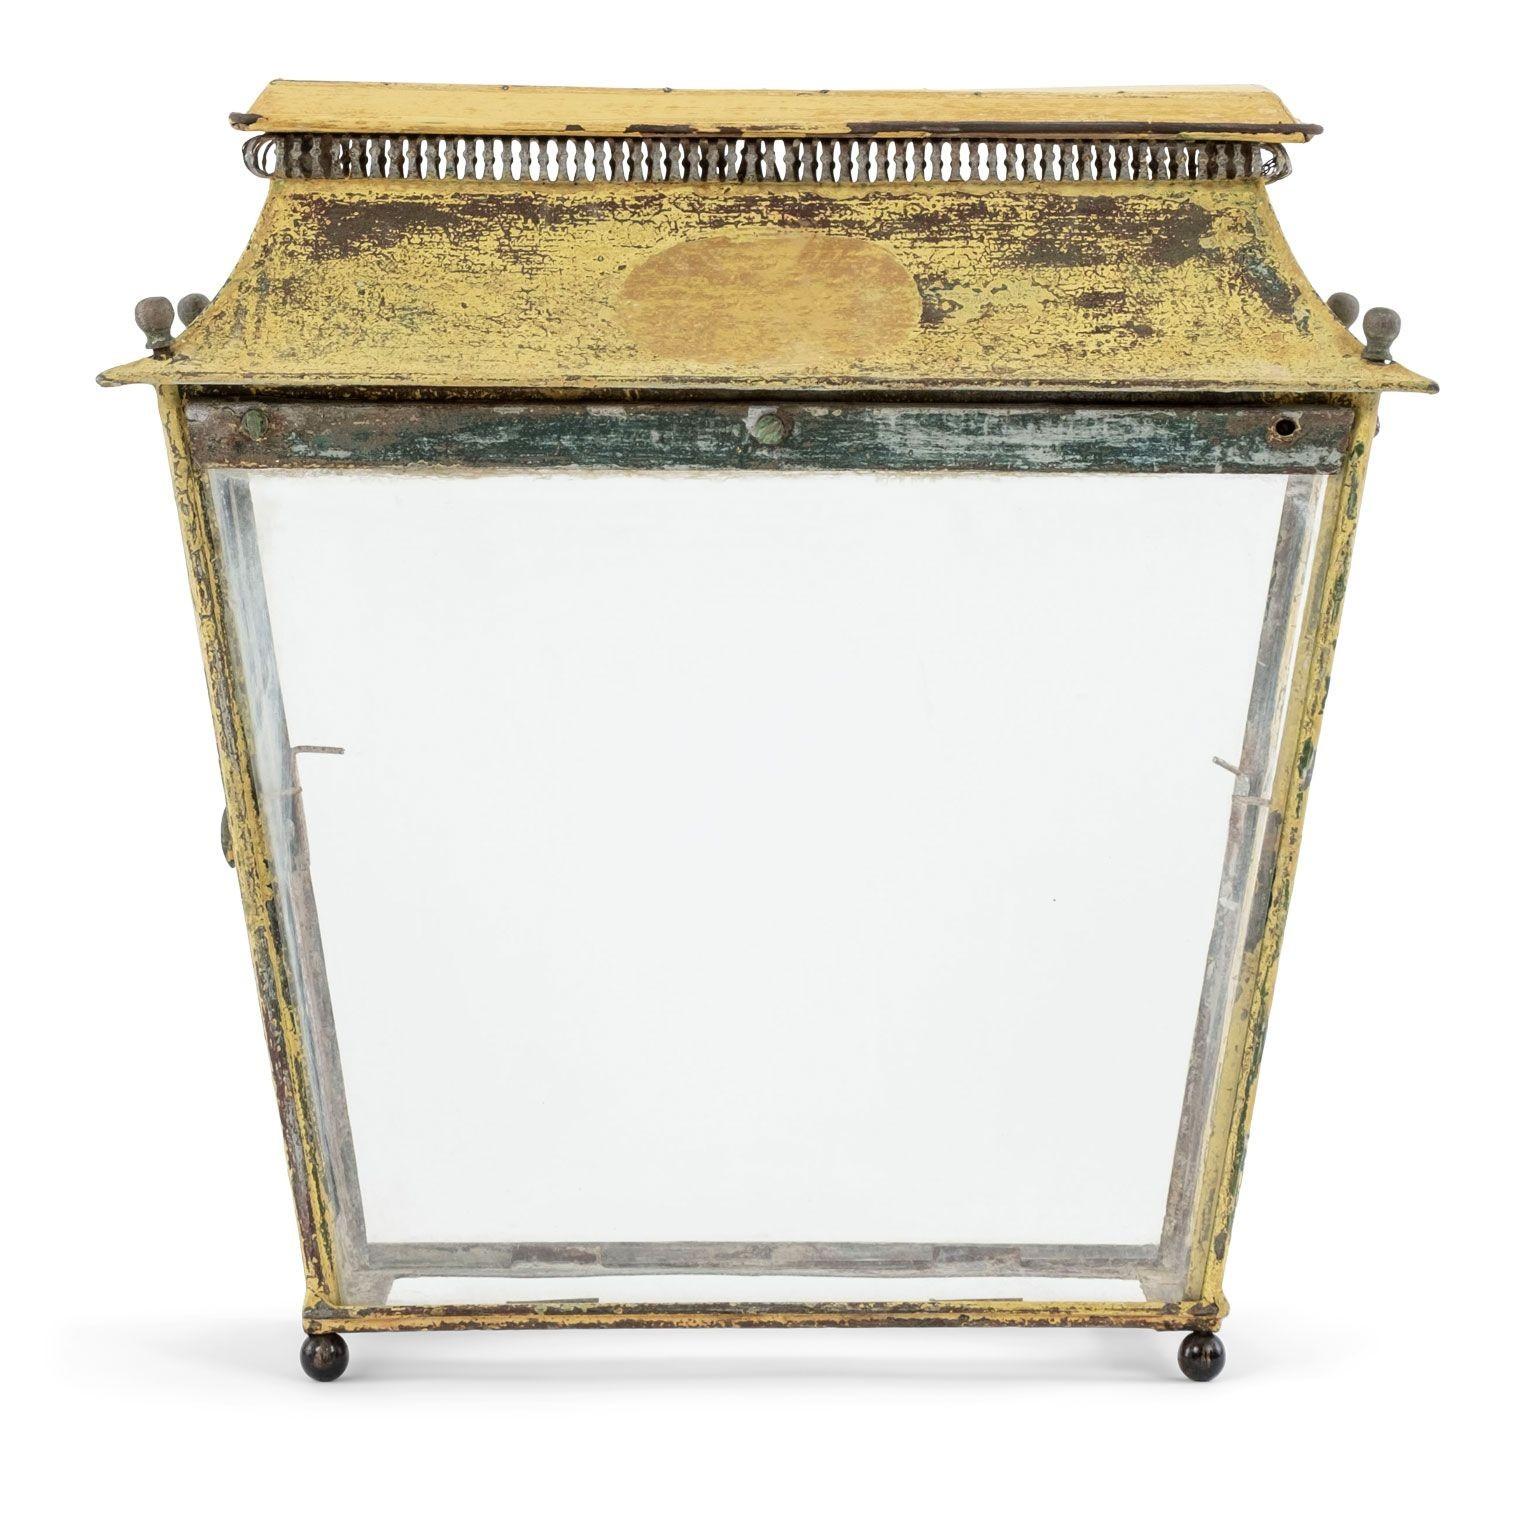 Gelb bemalte französische Tole-Laterne. Laterne aus dem 19. Jahrhundert mit verglasten Seiten. Geeignet für eine Tischplatte oder zur Wandmontage mit einer zusätzlichen Halterung. Die Laterne ist nicht elektrifiziert, kann aber gegen Aufpreis